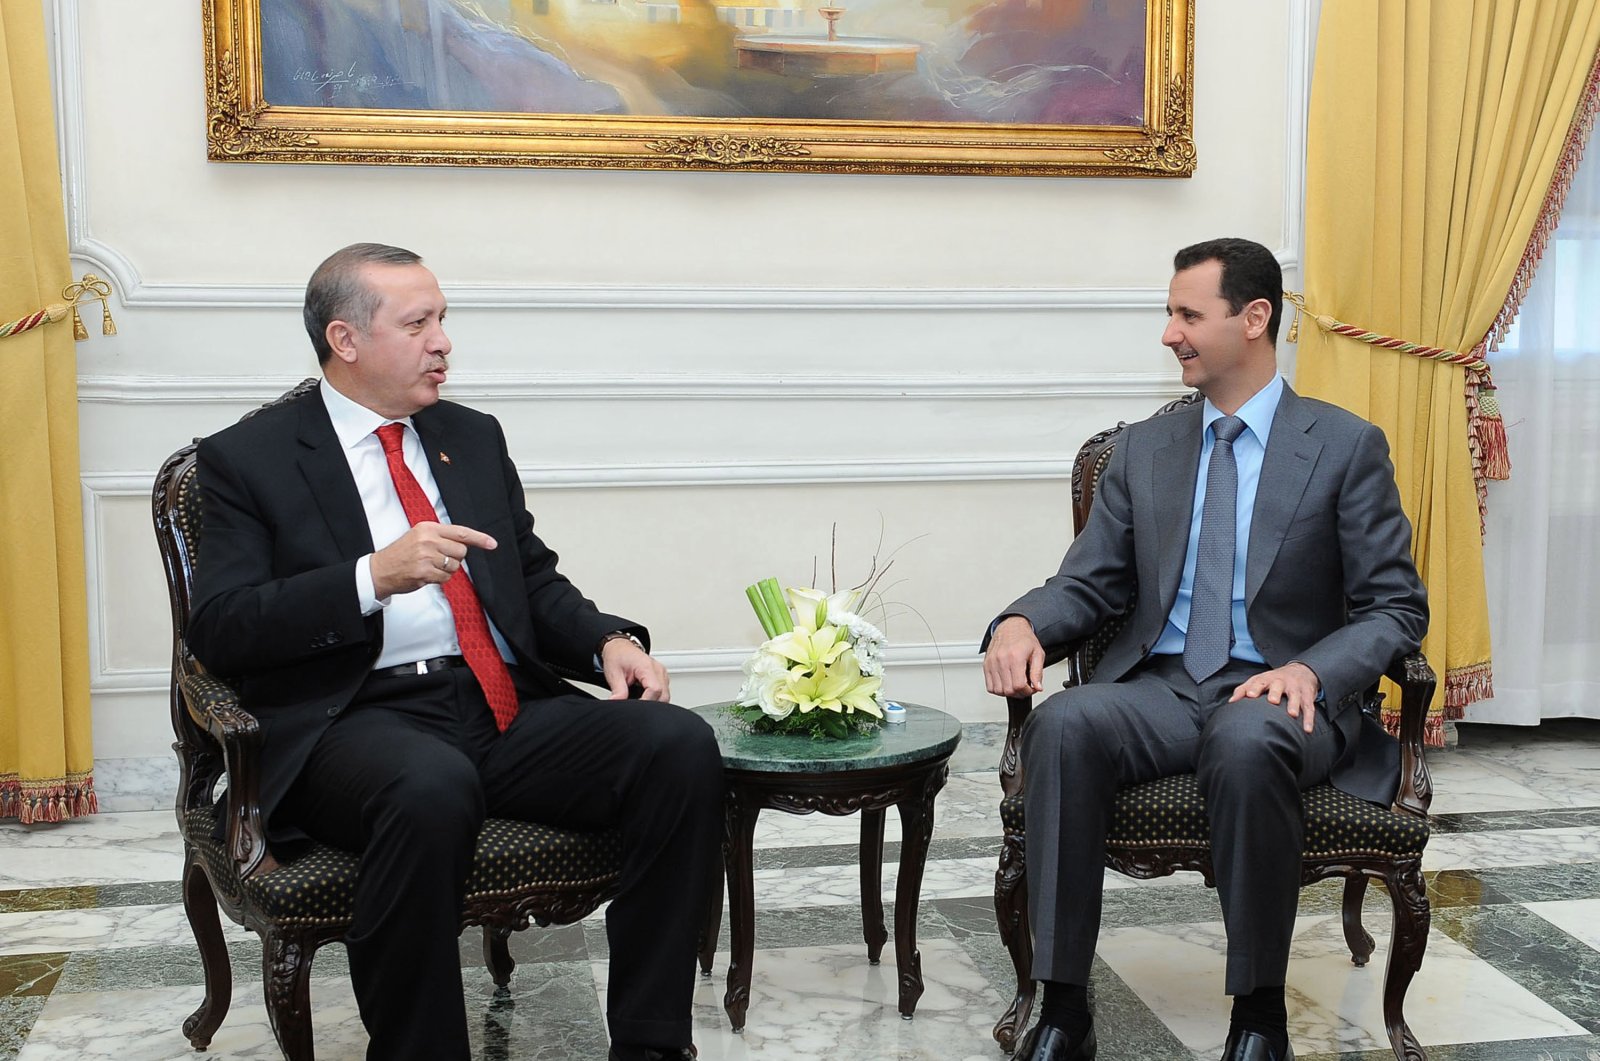 Άσαντ: Θα συναντηθώ με τον Ερντογάν όταν αποσύρει το στρατό του από τη Βόρεια Συρία